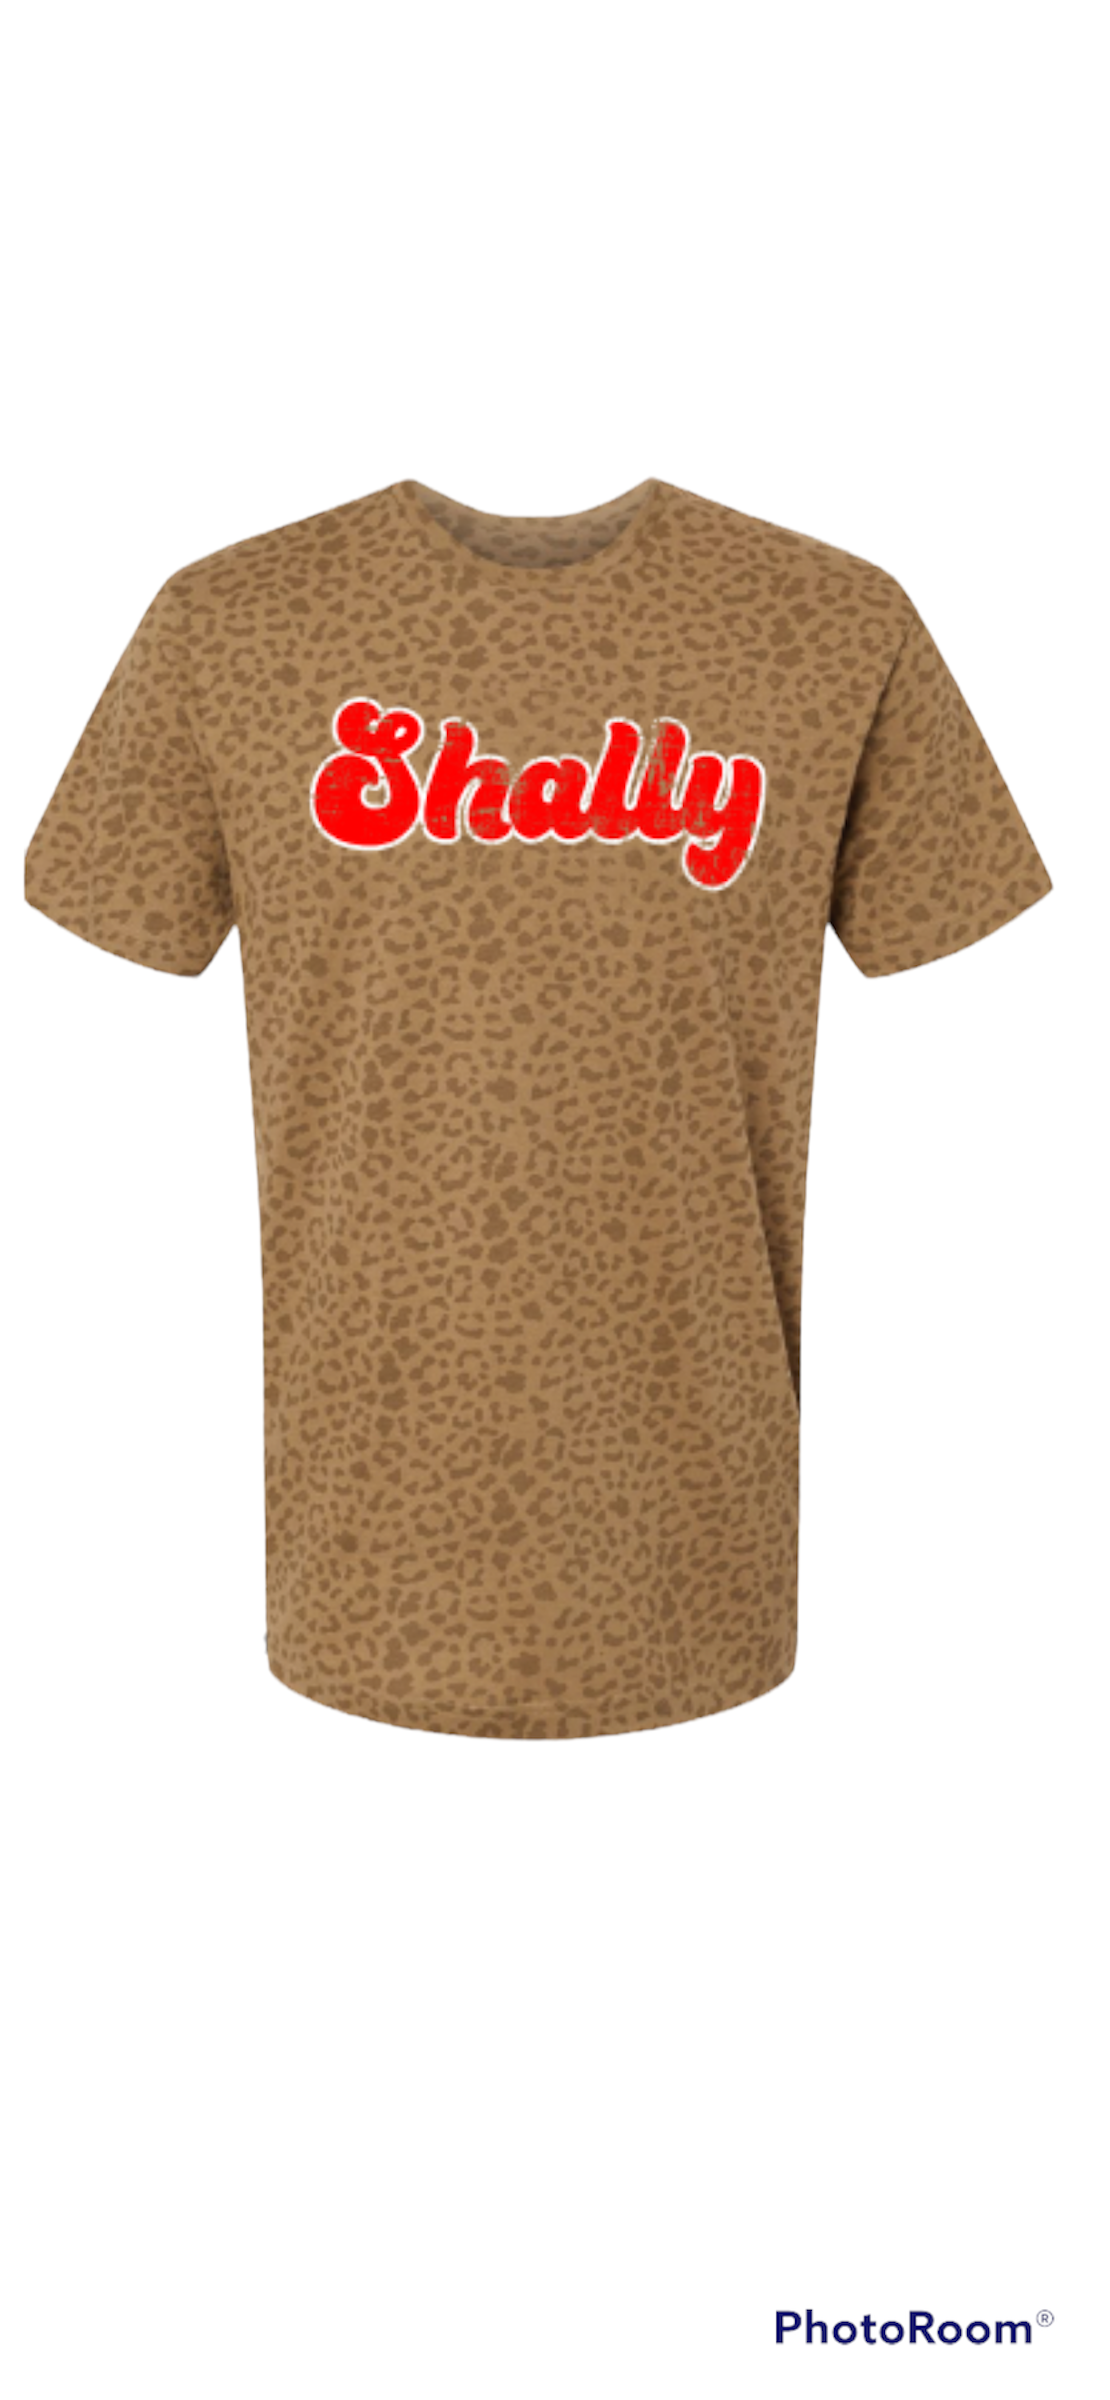 Shally shirt